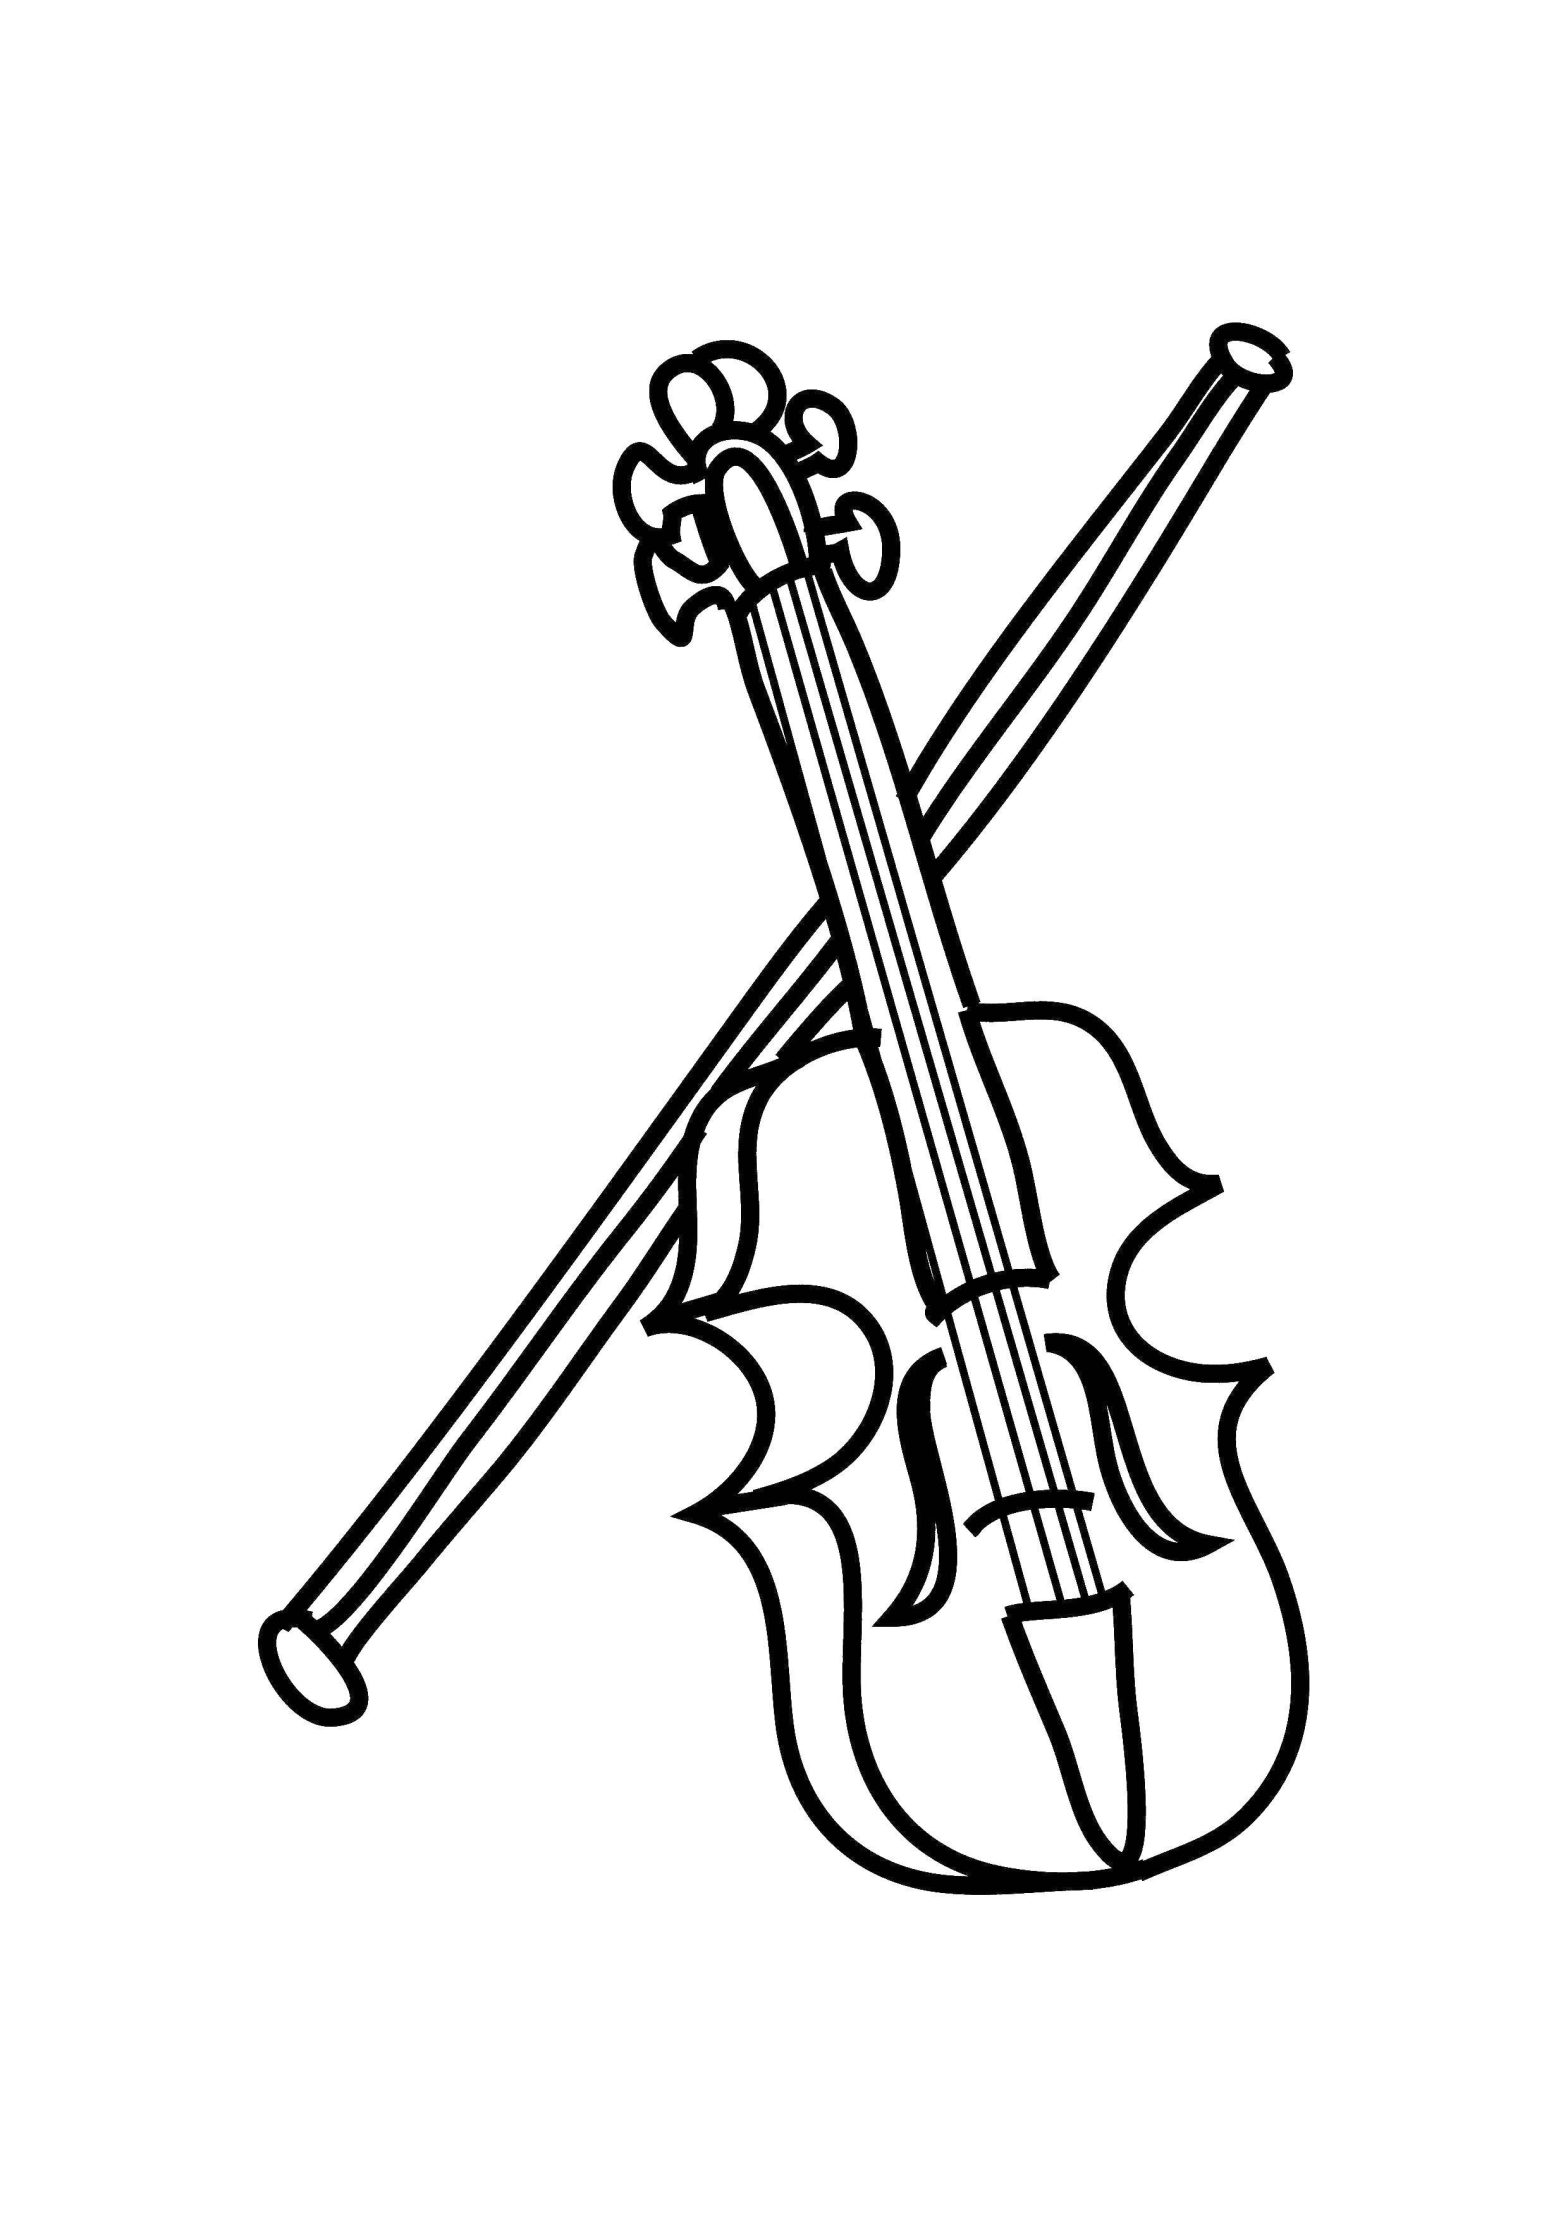 Раскраска музыкальных инструментов скрипка (скрипка)